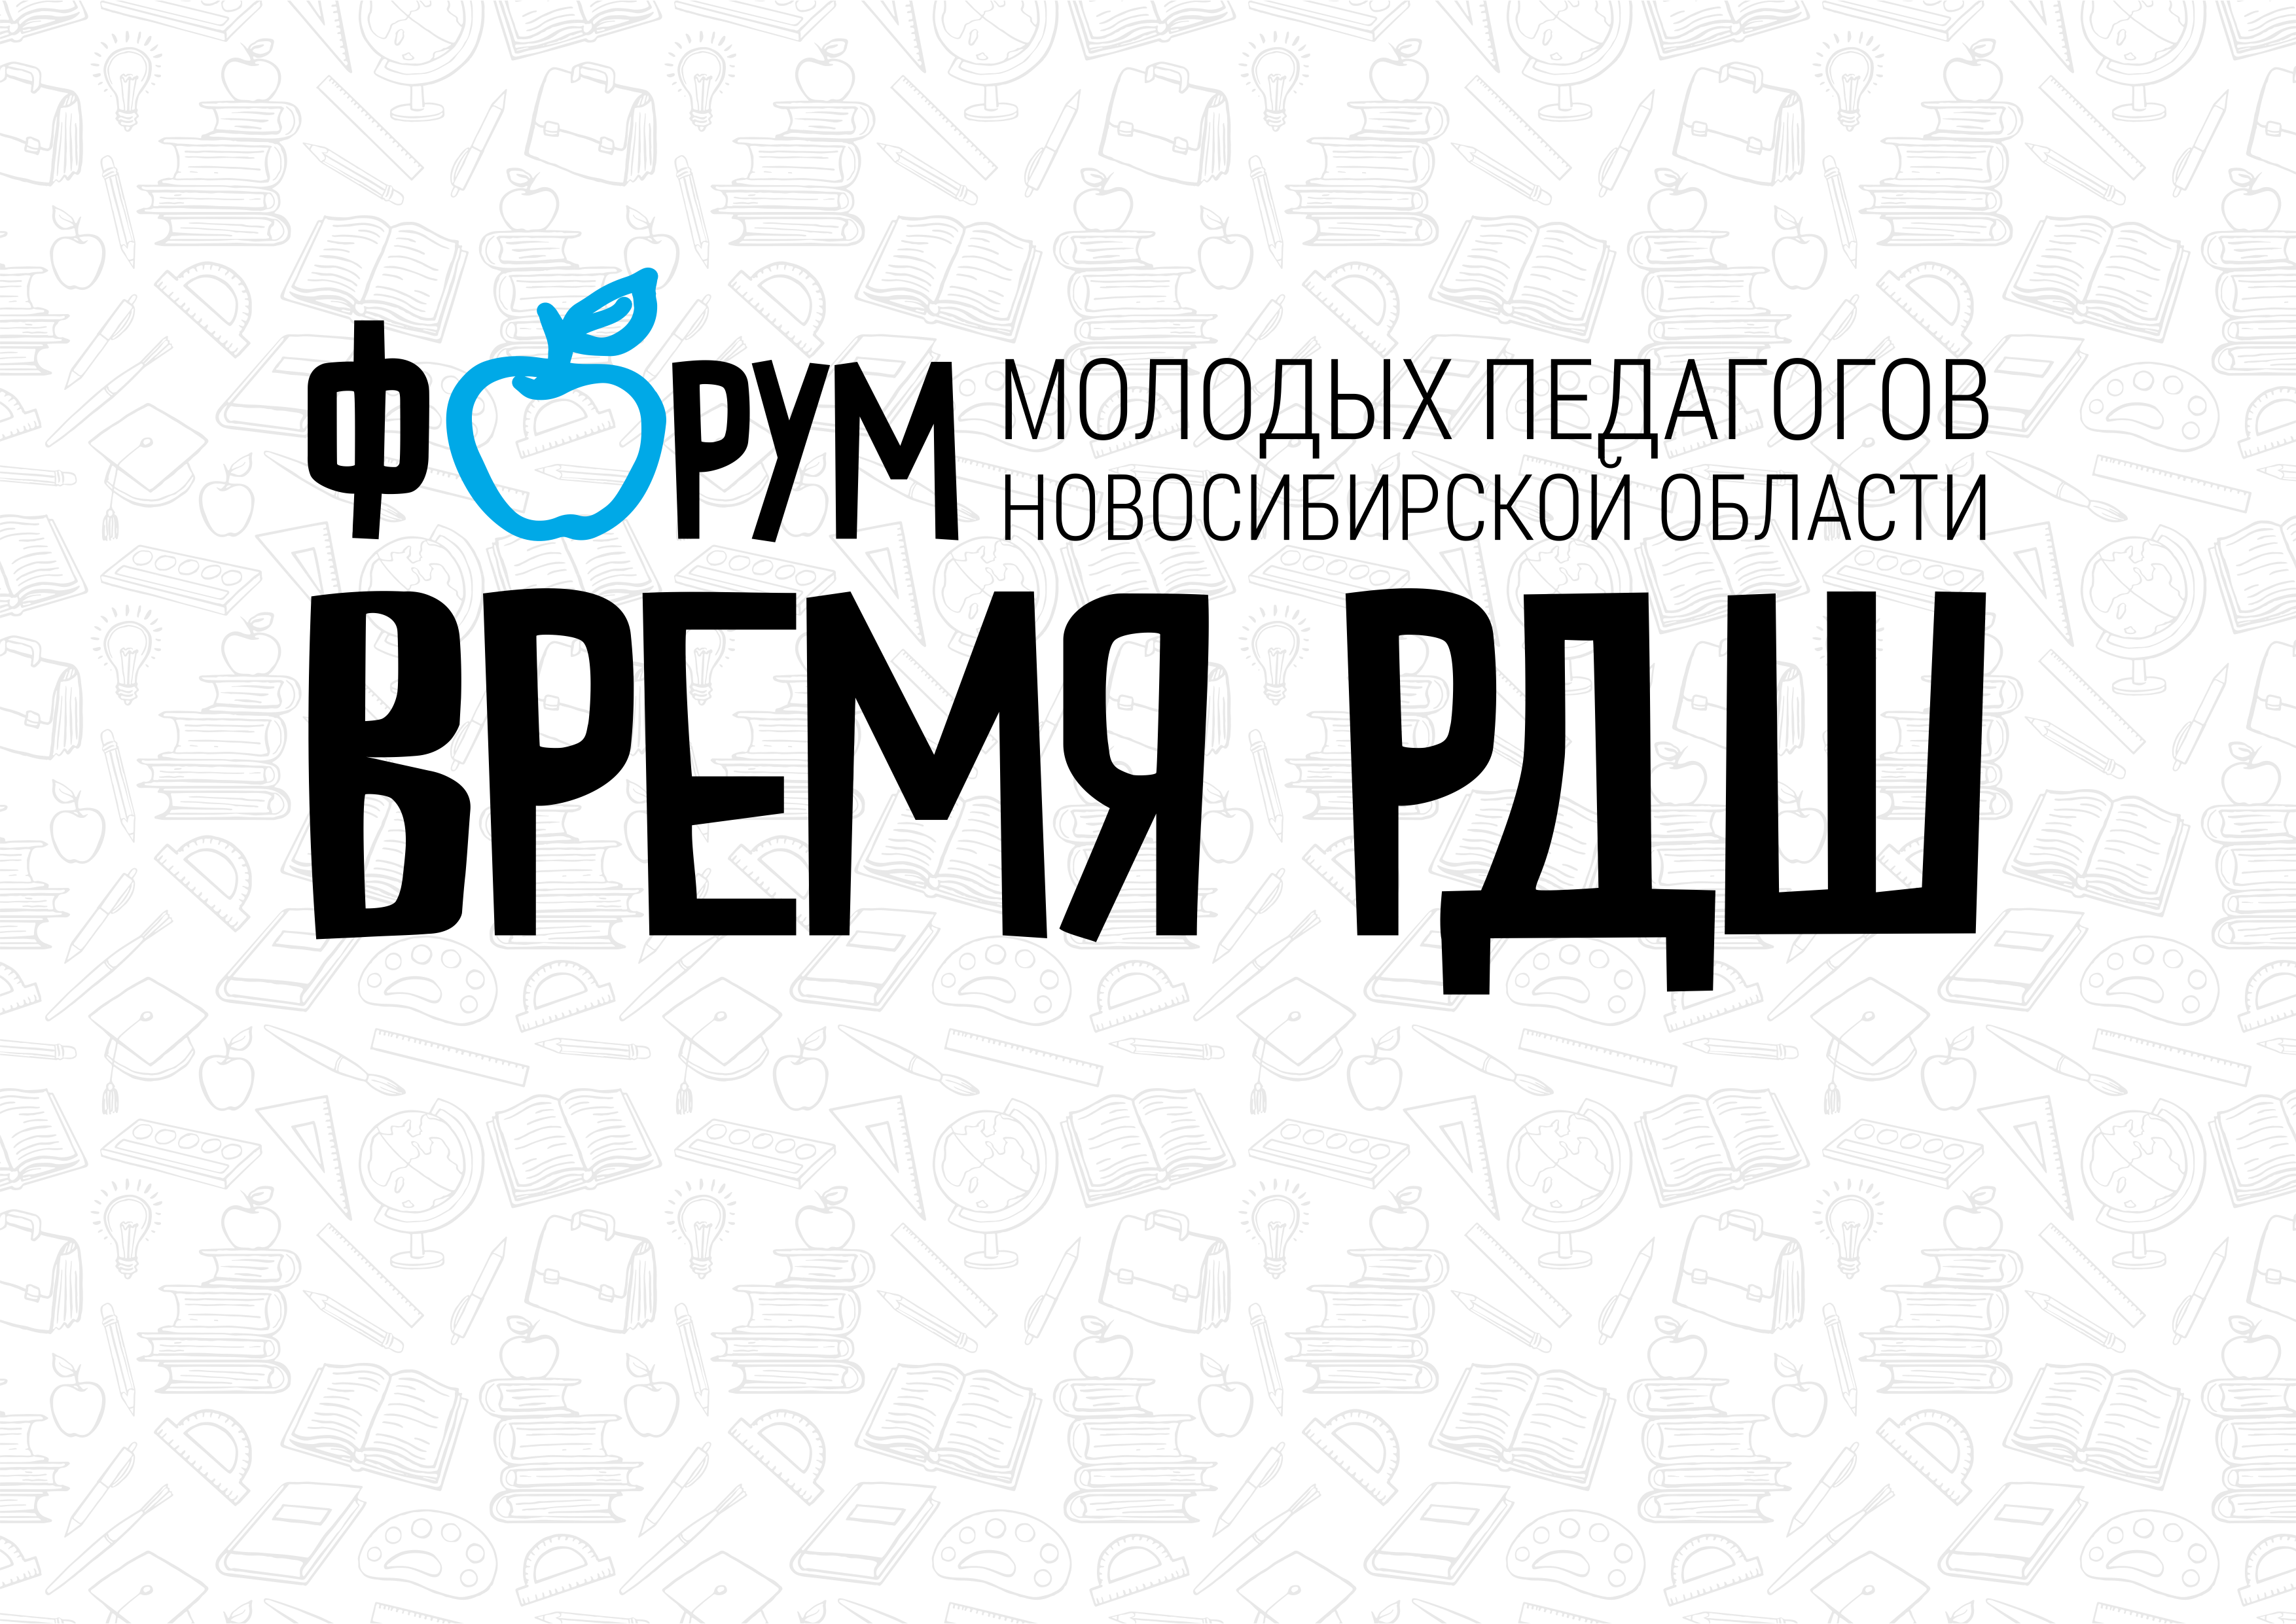 Форум молодых педагогов "Время РДШ" стартовал в Новосибирской области